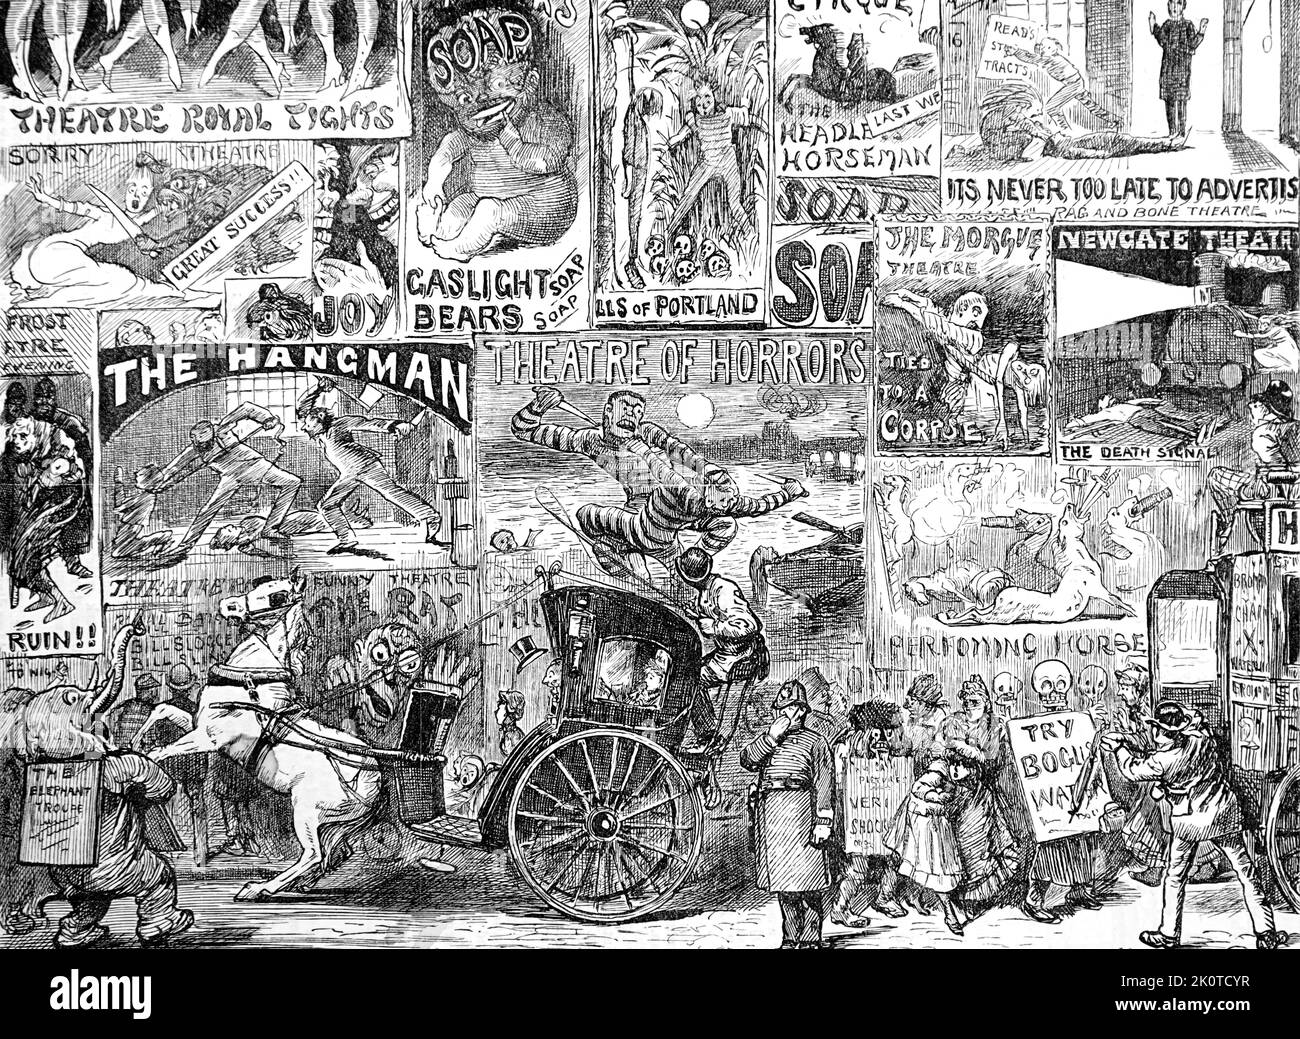 Cartoni animati da pugno che mostrano che il sesso; il crimine; la violenza hanno sempre giocato un ruolo forte in strada advertissng; Londra 1887 Foto Stock